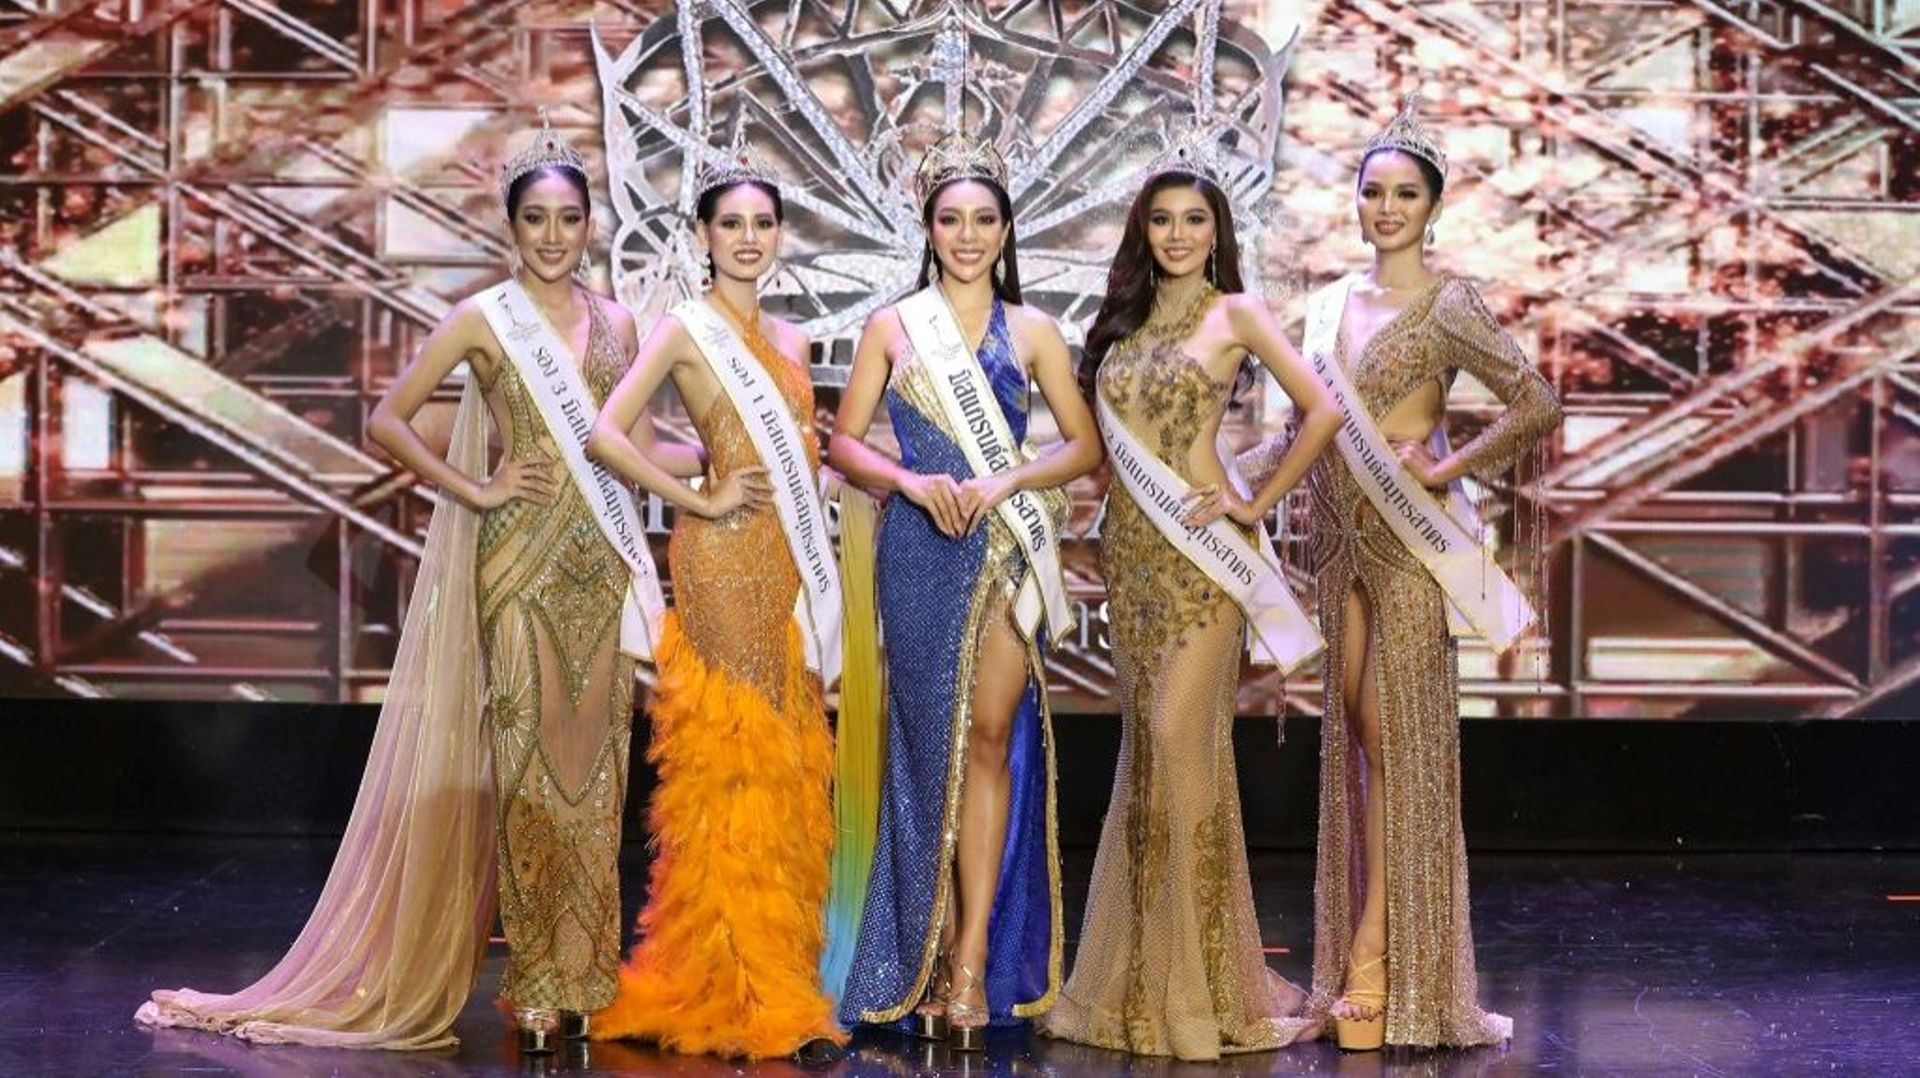 Des reines de beauté thaïlandaises le 27 juin 2021 à Bangkok dans une image diffusée par le councours